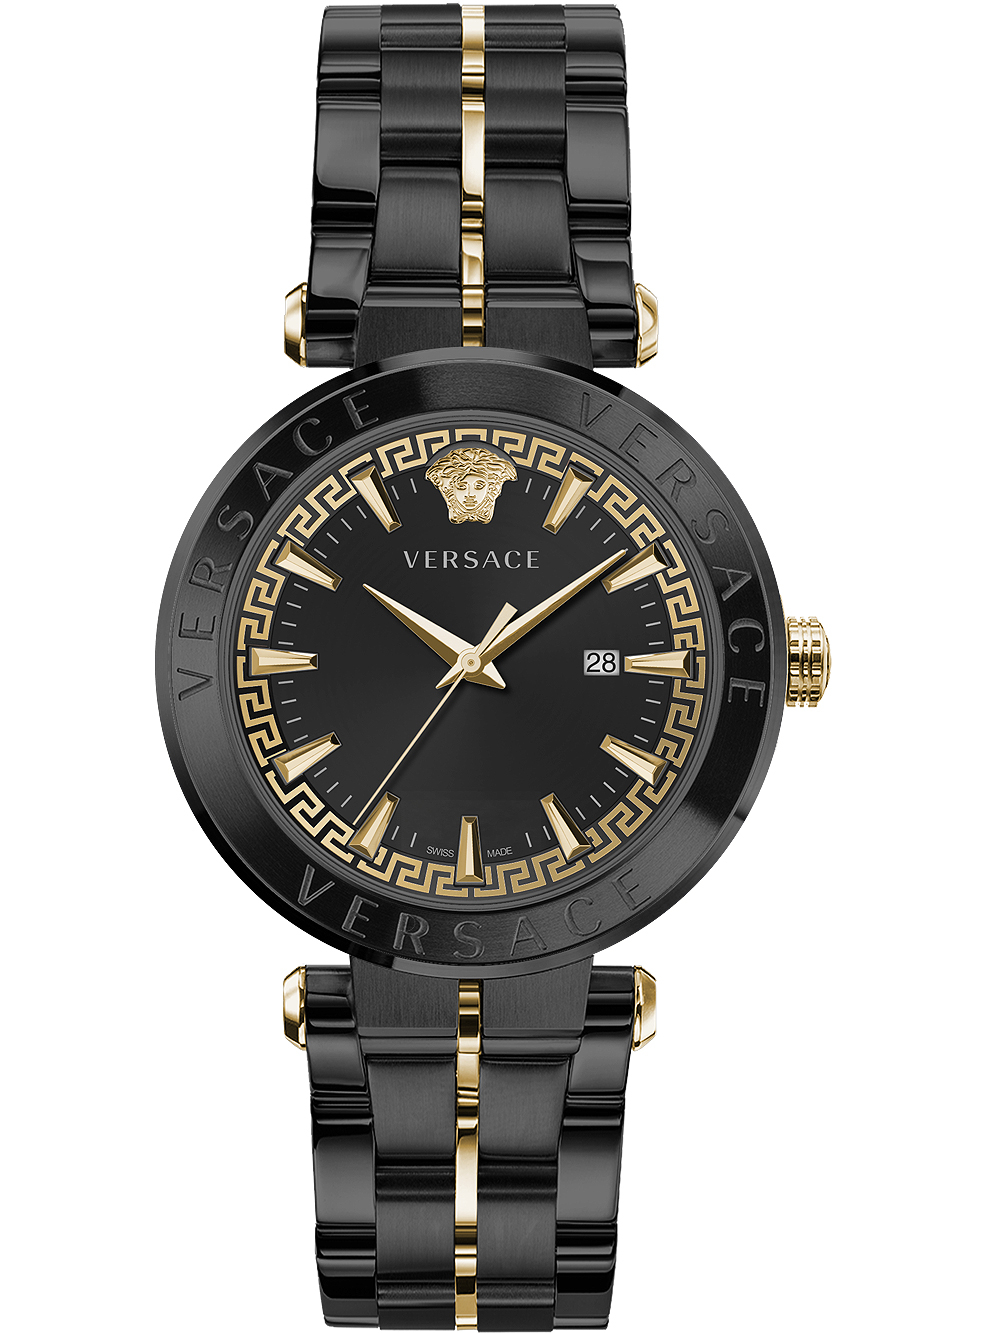 Zegarek męski Versace VE2G00621 Aion